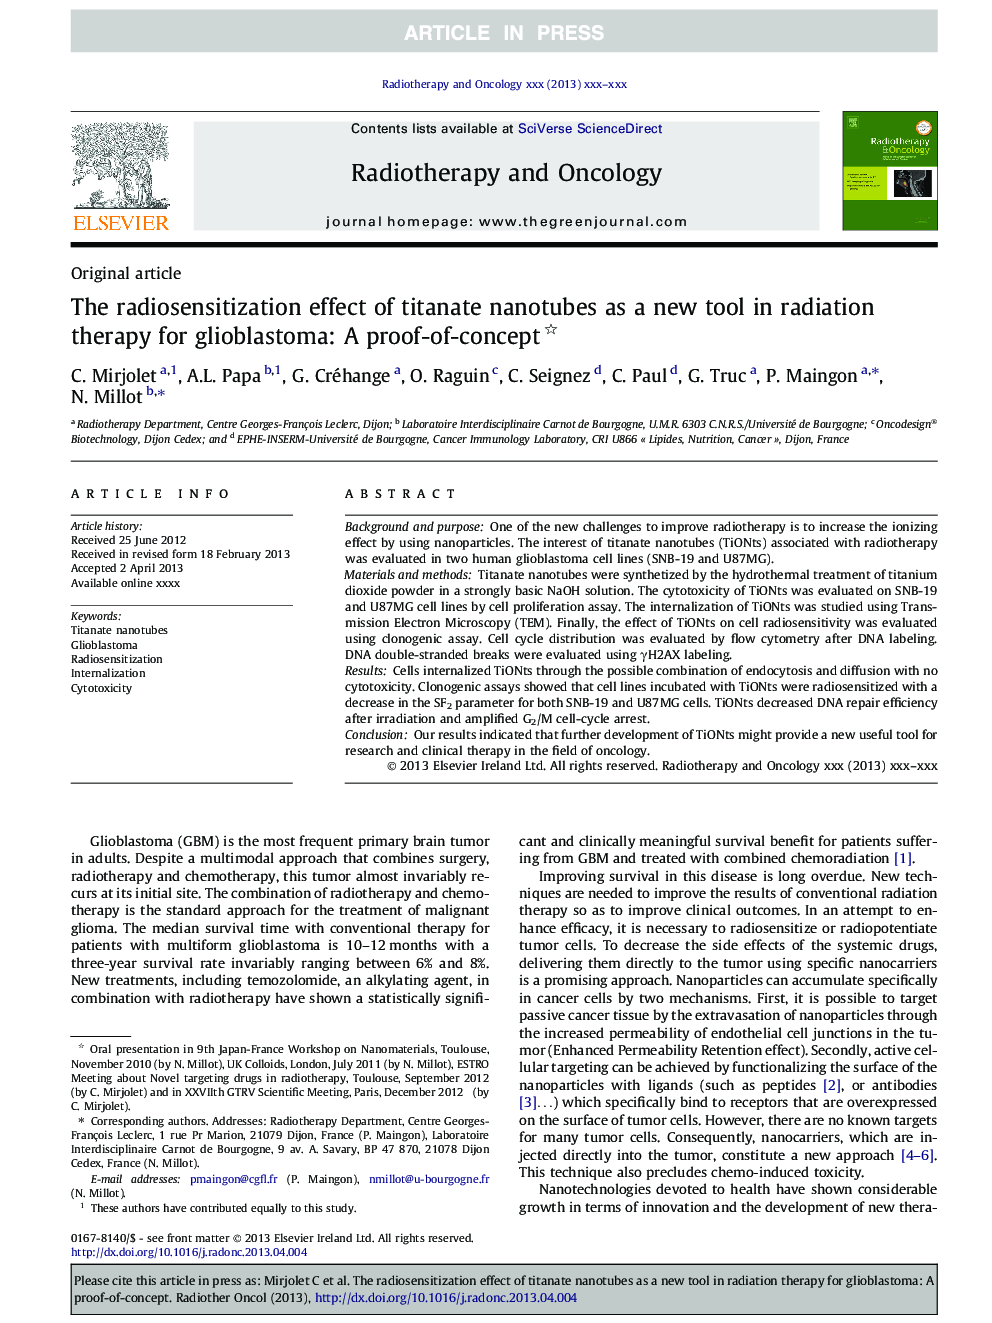 تأثیر حساسیت رادیویی نانولوله های تیتانات به عنوان یک ابزار جدید در پرتودرمانی برای گلیوبلاستوما: اثبات مفهوم 